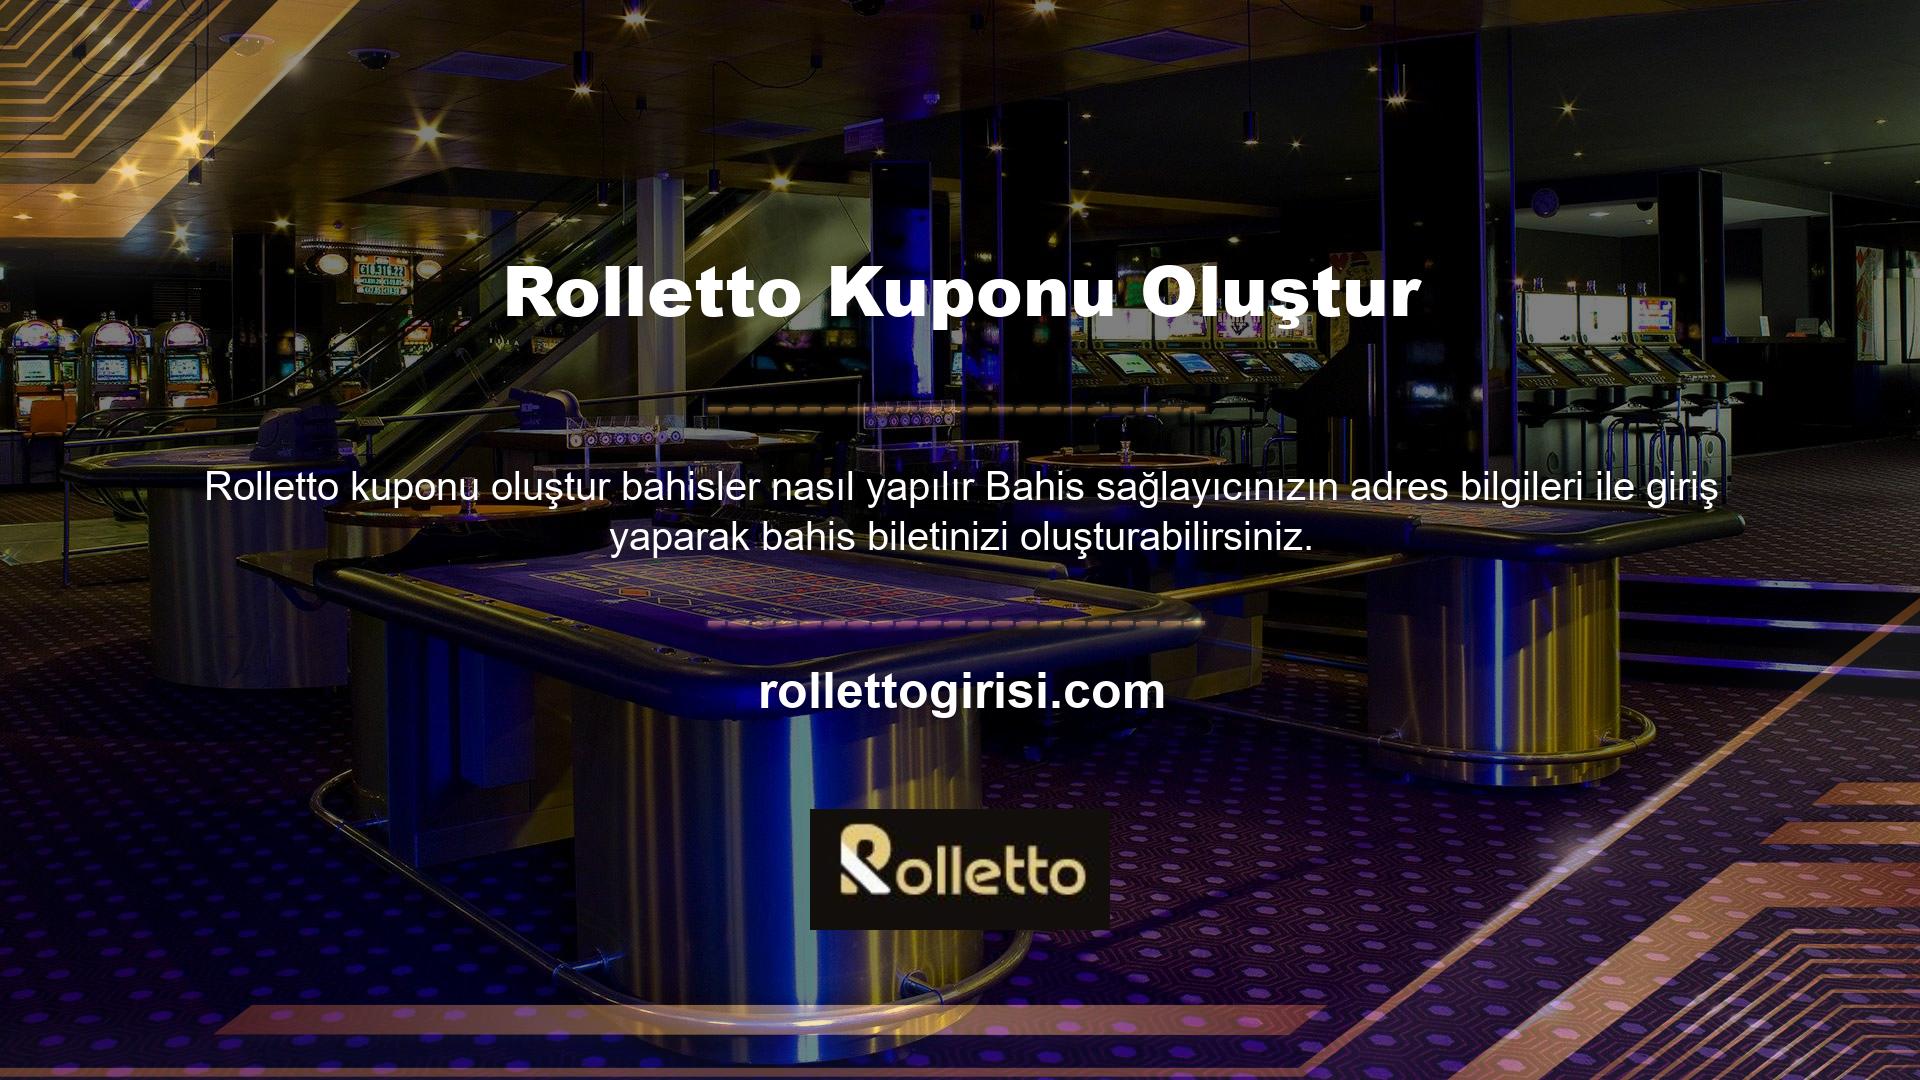 Bir Rolletto kuponu şu şekilde oluşturulur: Spor bahisleri için bu siteyi ziyaret edin